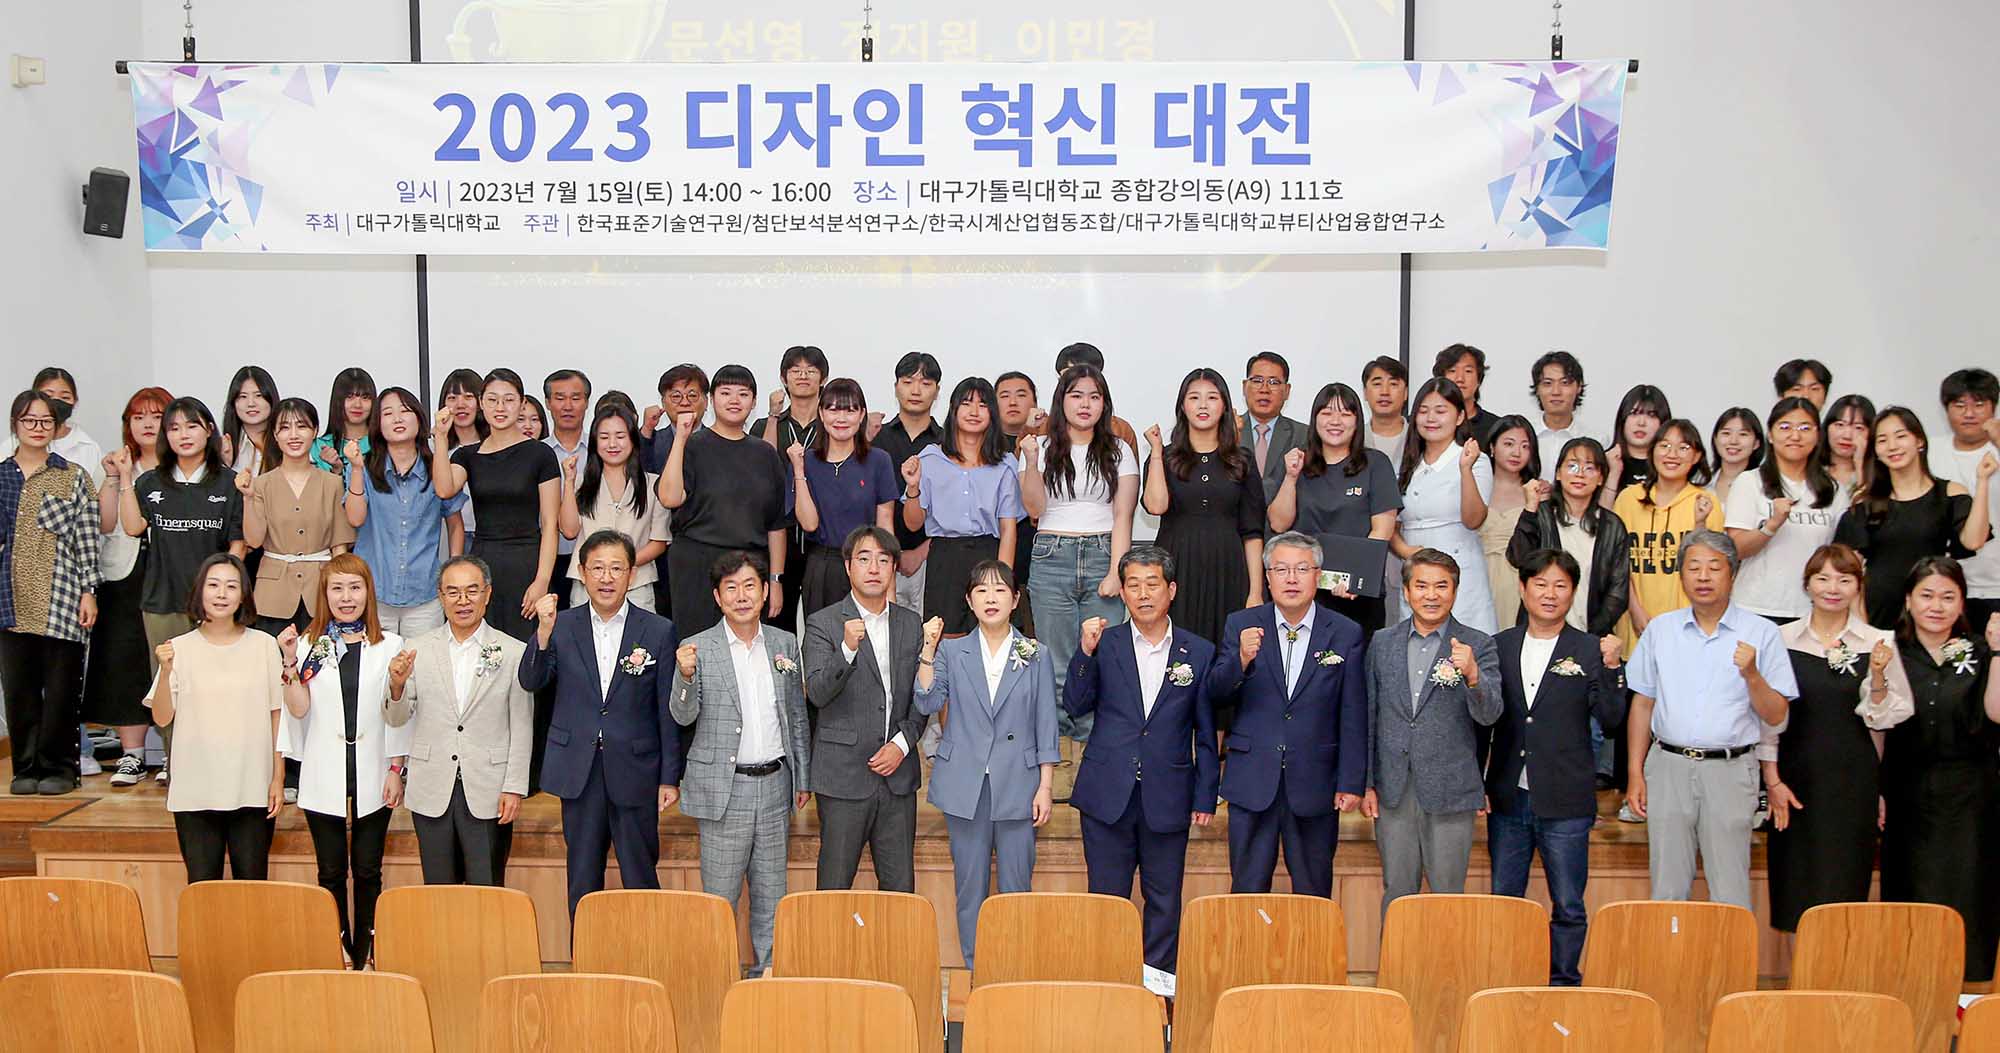 2023 디자인 혁신 대전 성황리 개최